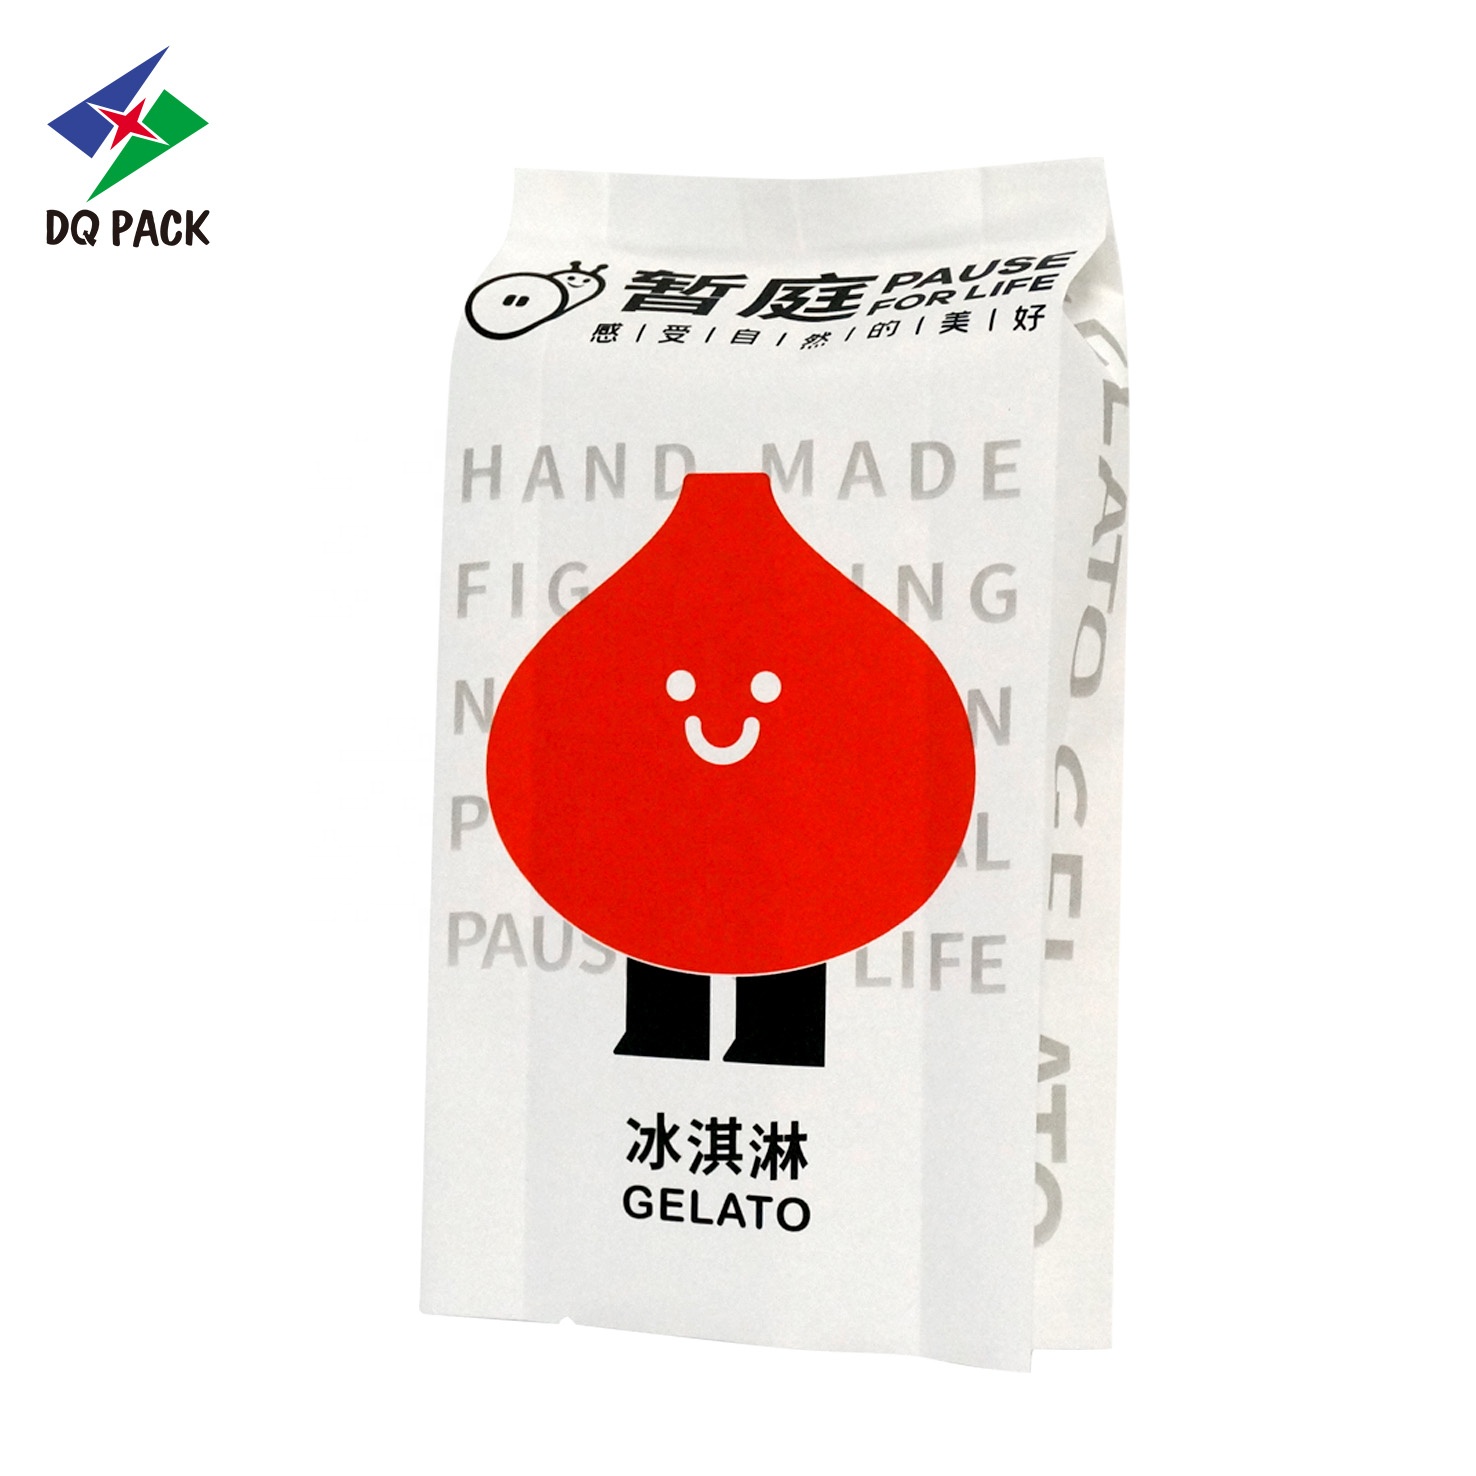 DQ PACK Matte Surface Back Seal Food Packaging Bag Plastic Heat Seal Side Gusset Bag For Snacks